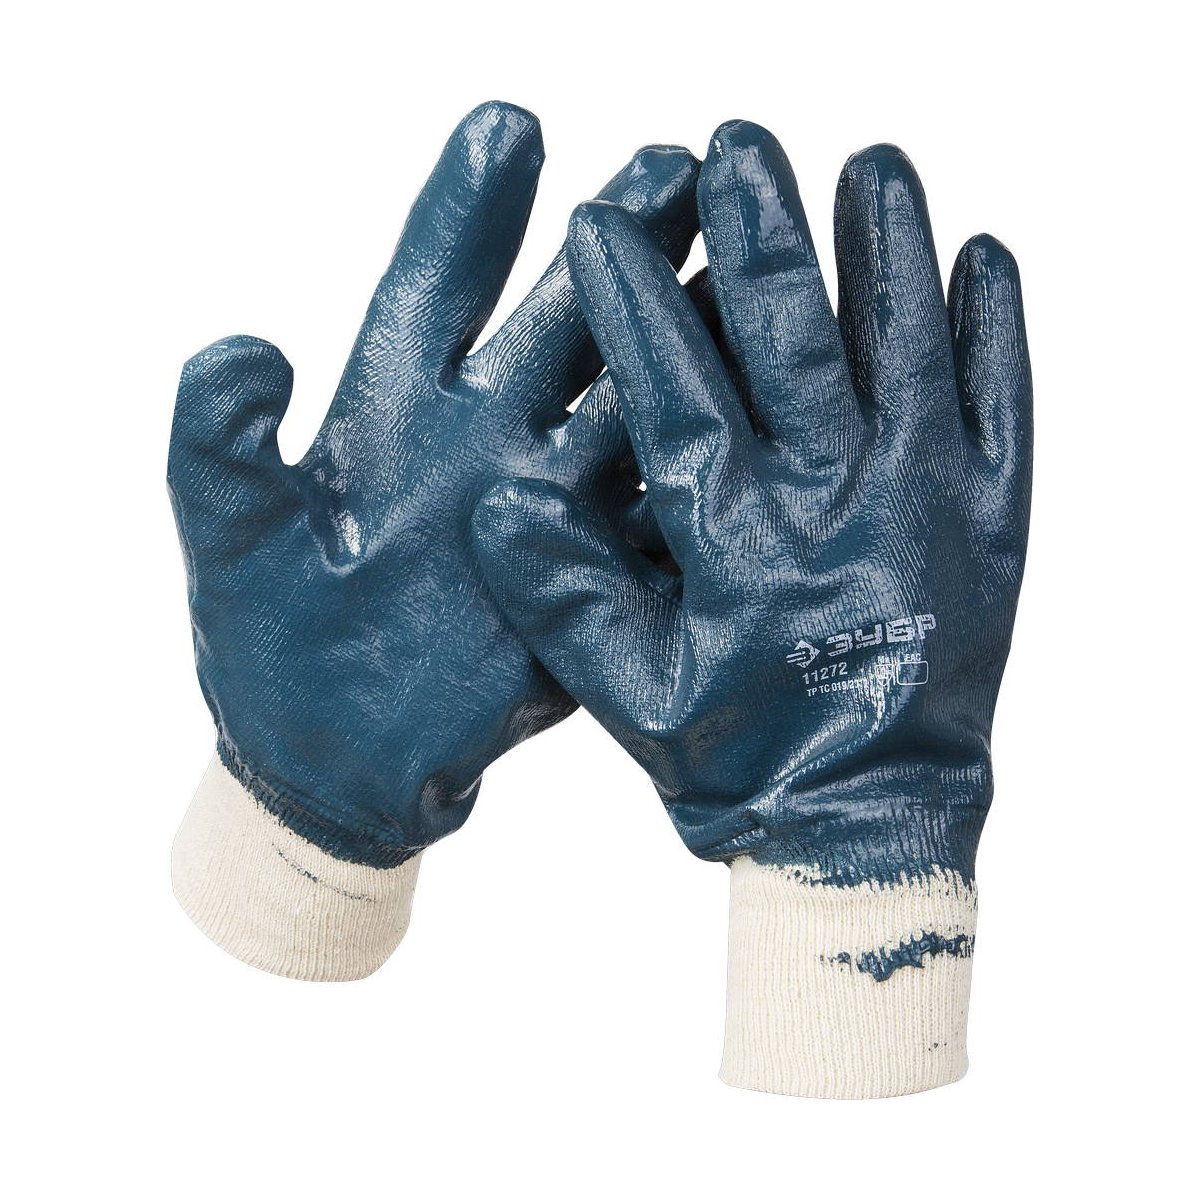 Прочные перчатки ЗУБР с манжетой, с нитриловым покрытием, масло-бензостойкие, износостойкие, XL(10), HARD, ПРОФЕССИОНАЛ, (11272-XL)Купить